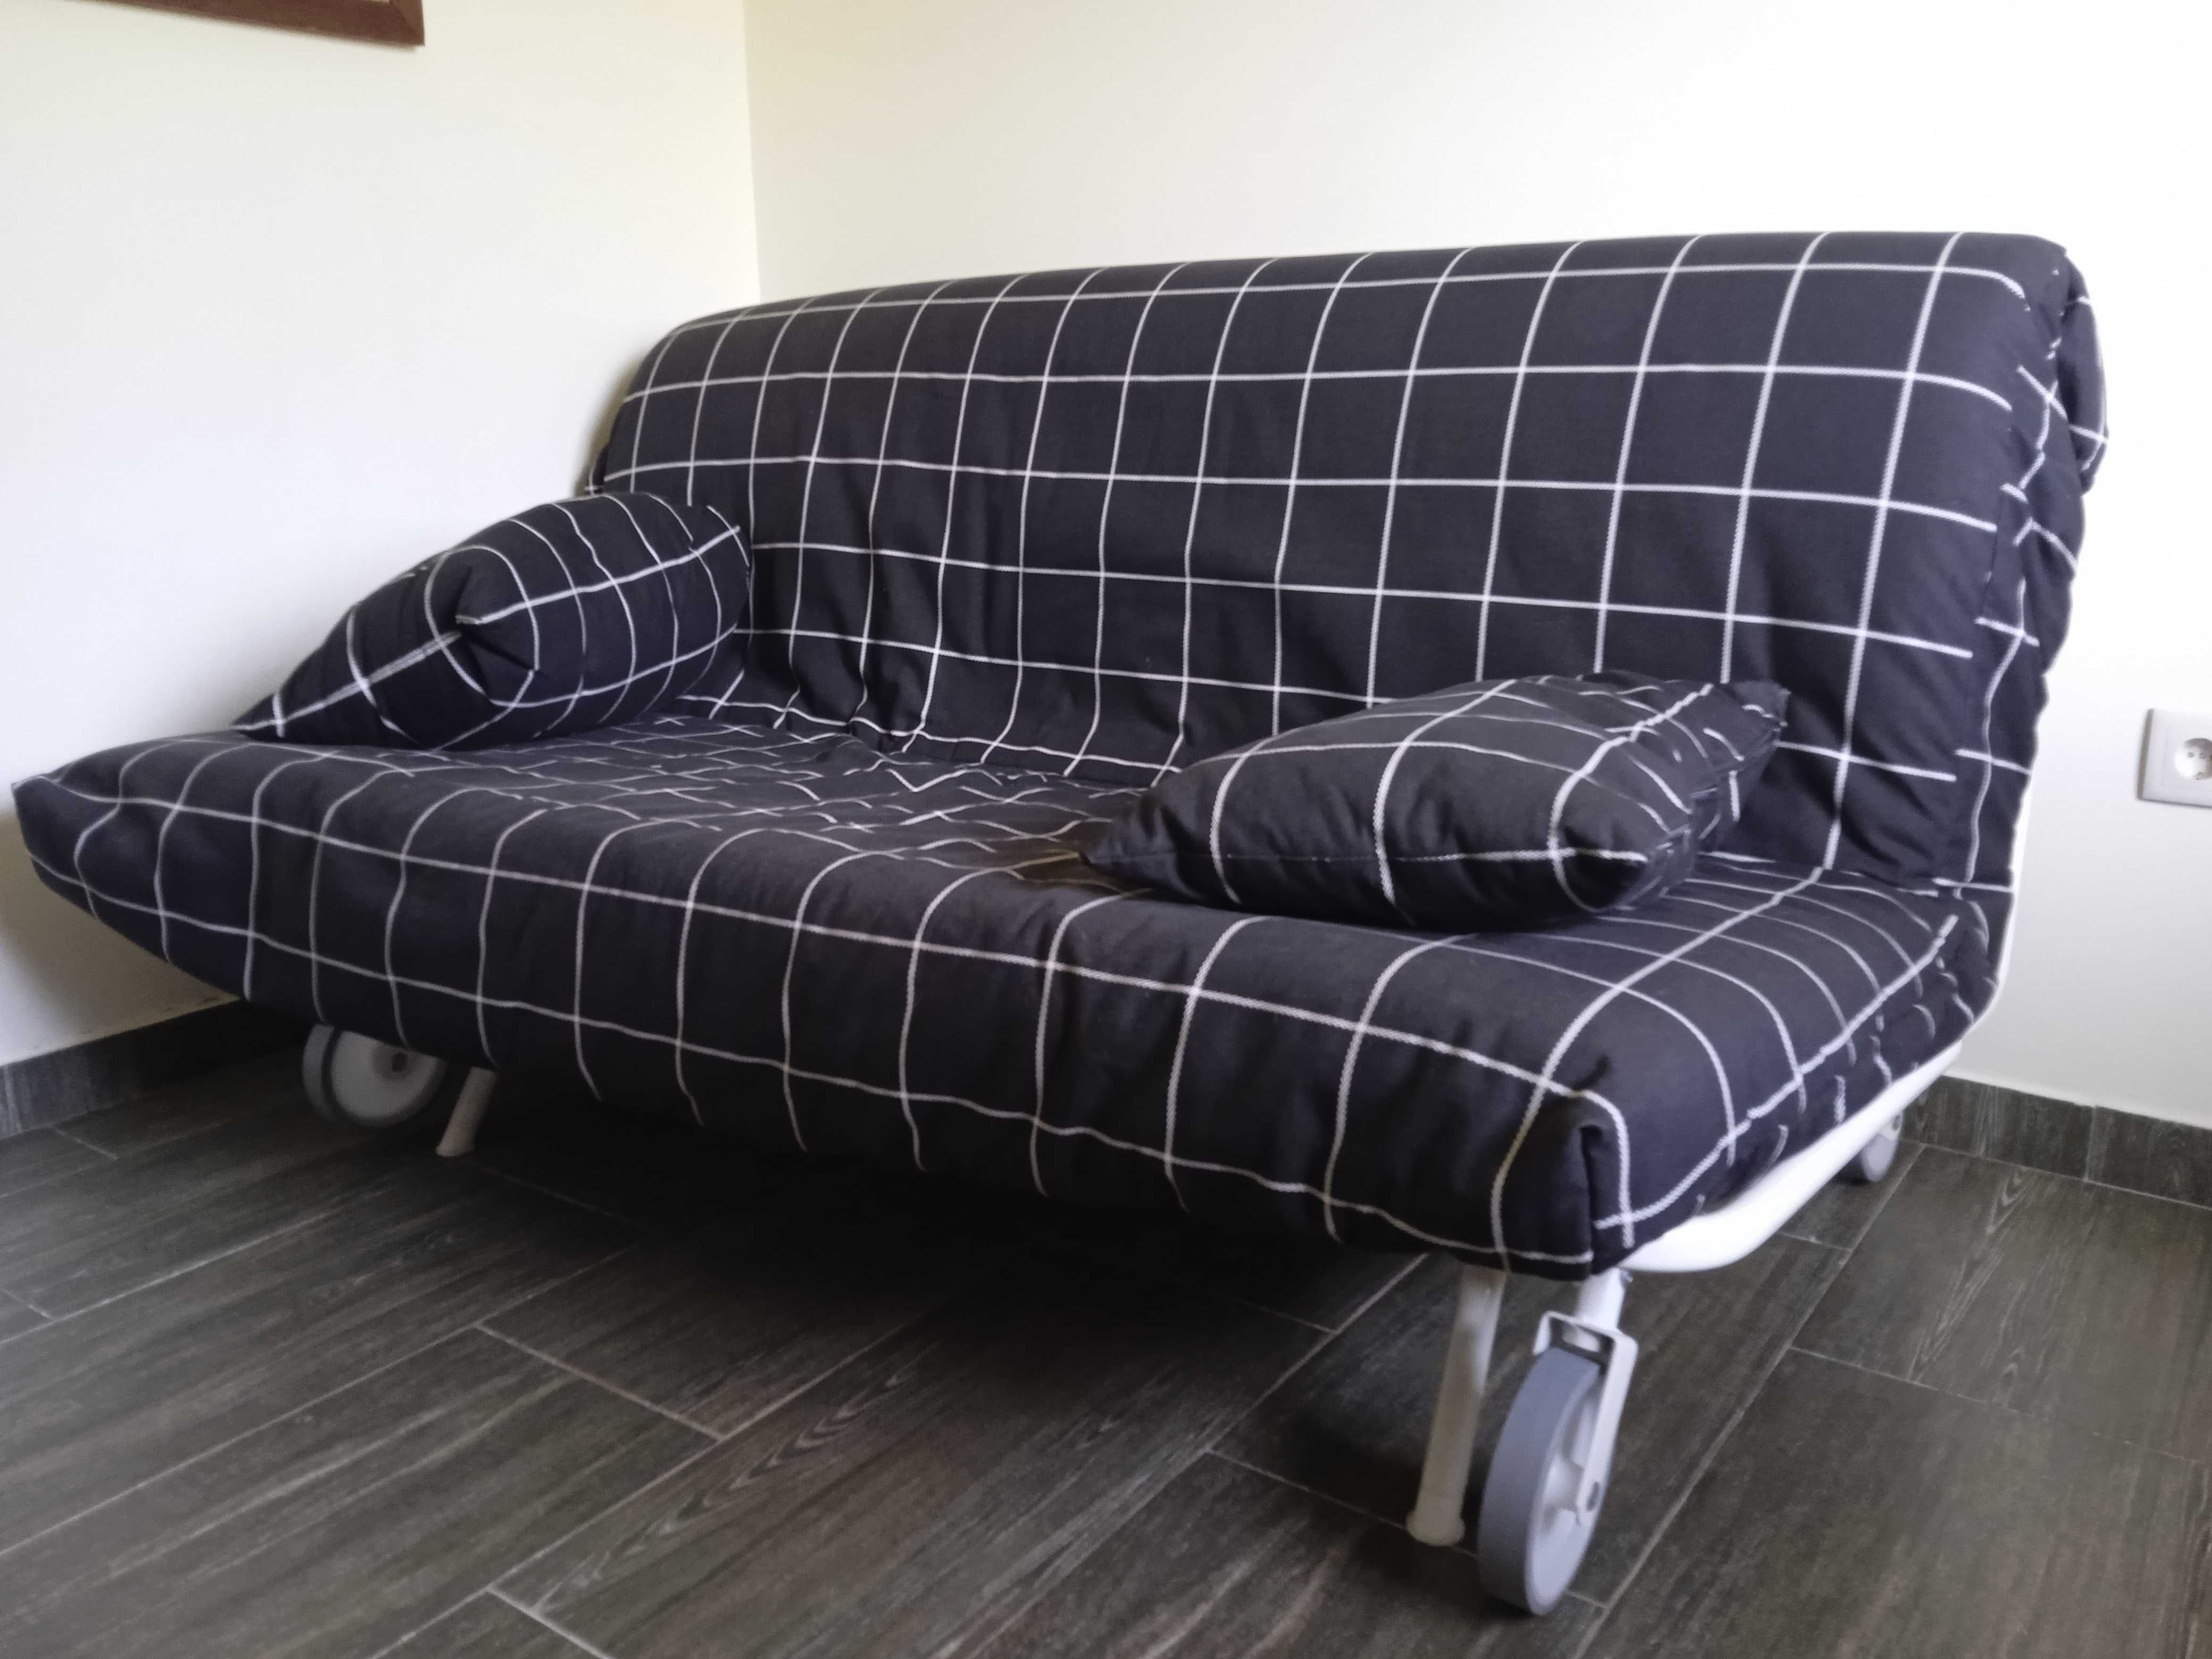 Sofa-cama 160x200